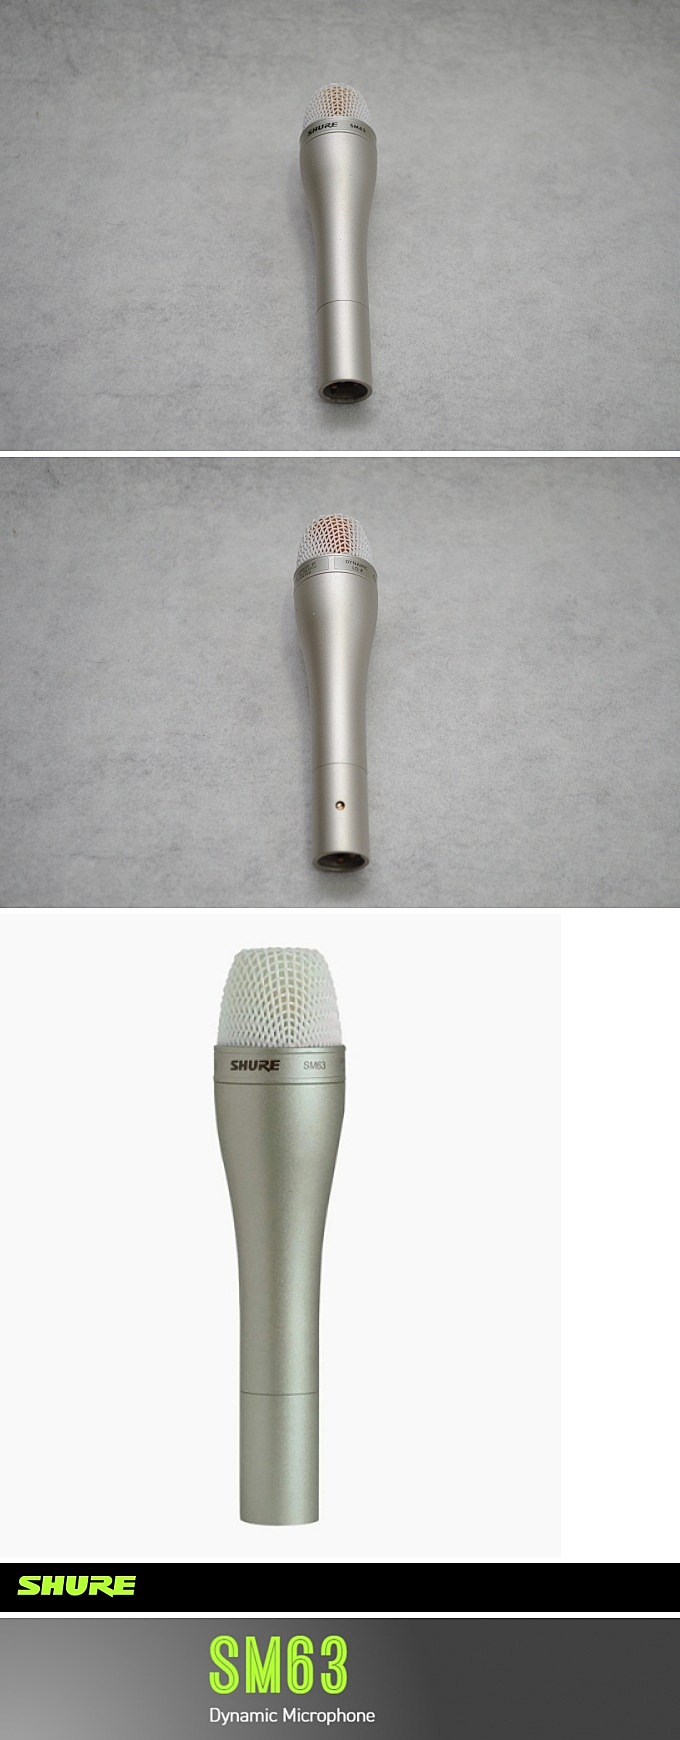 SHURE SM63 Microphone 2 (68).jpg